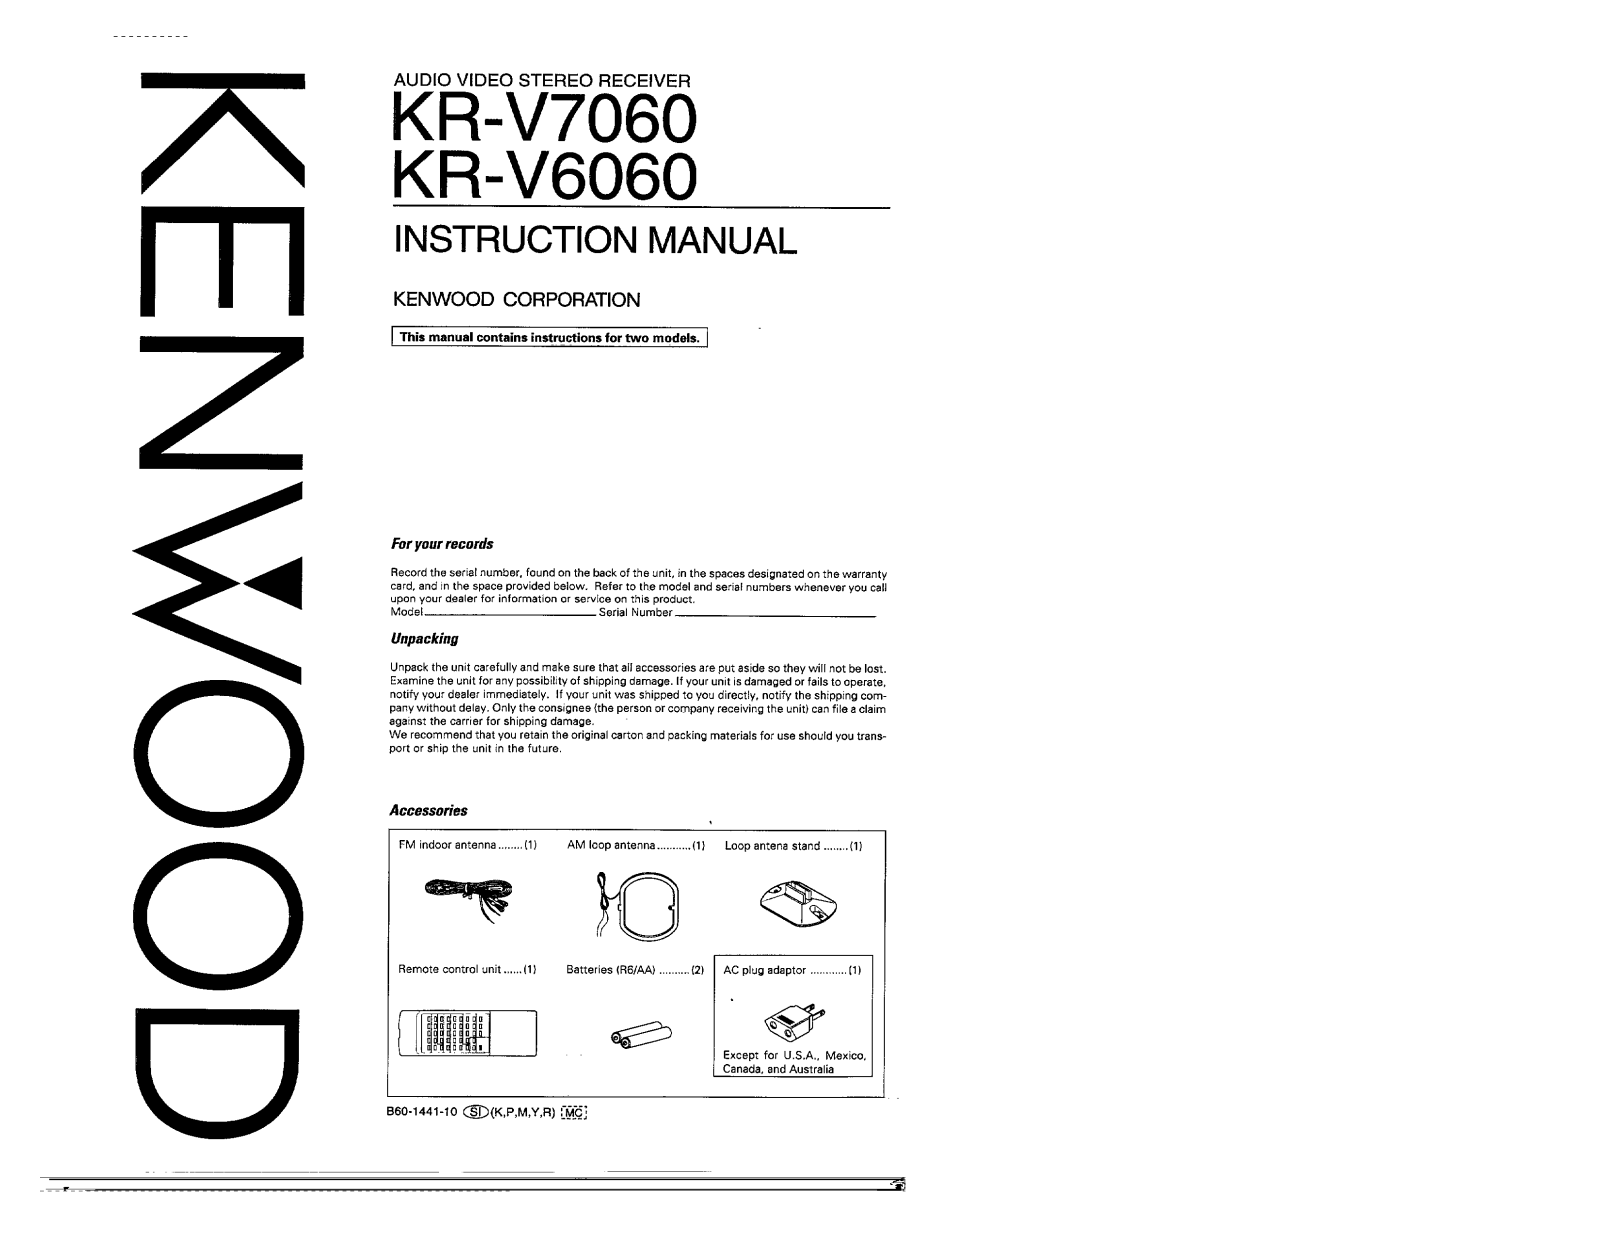 Kenwood KR-V7060, KR-V6060 Owner's Manual